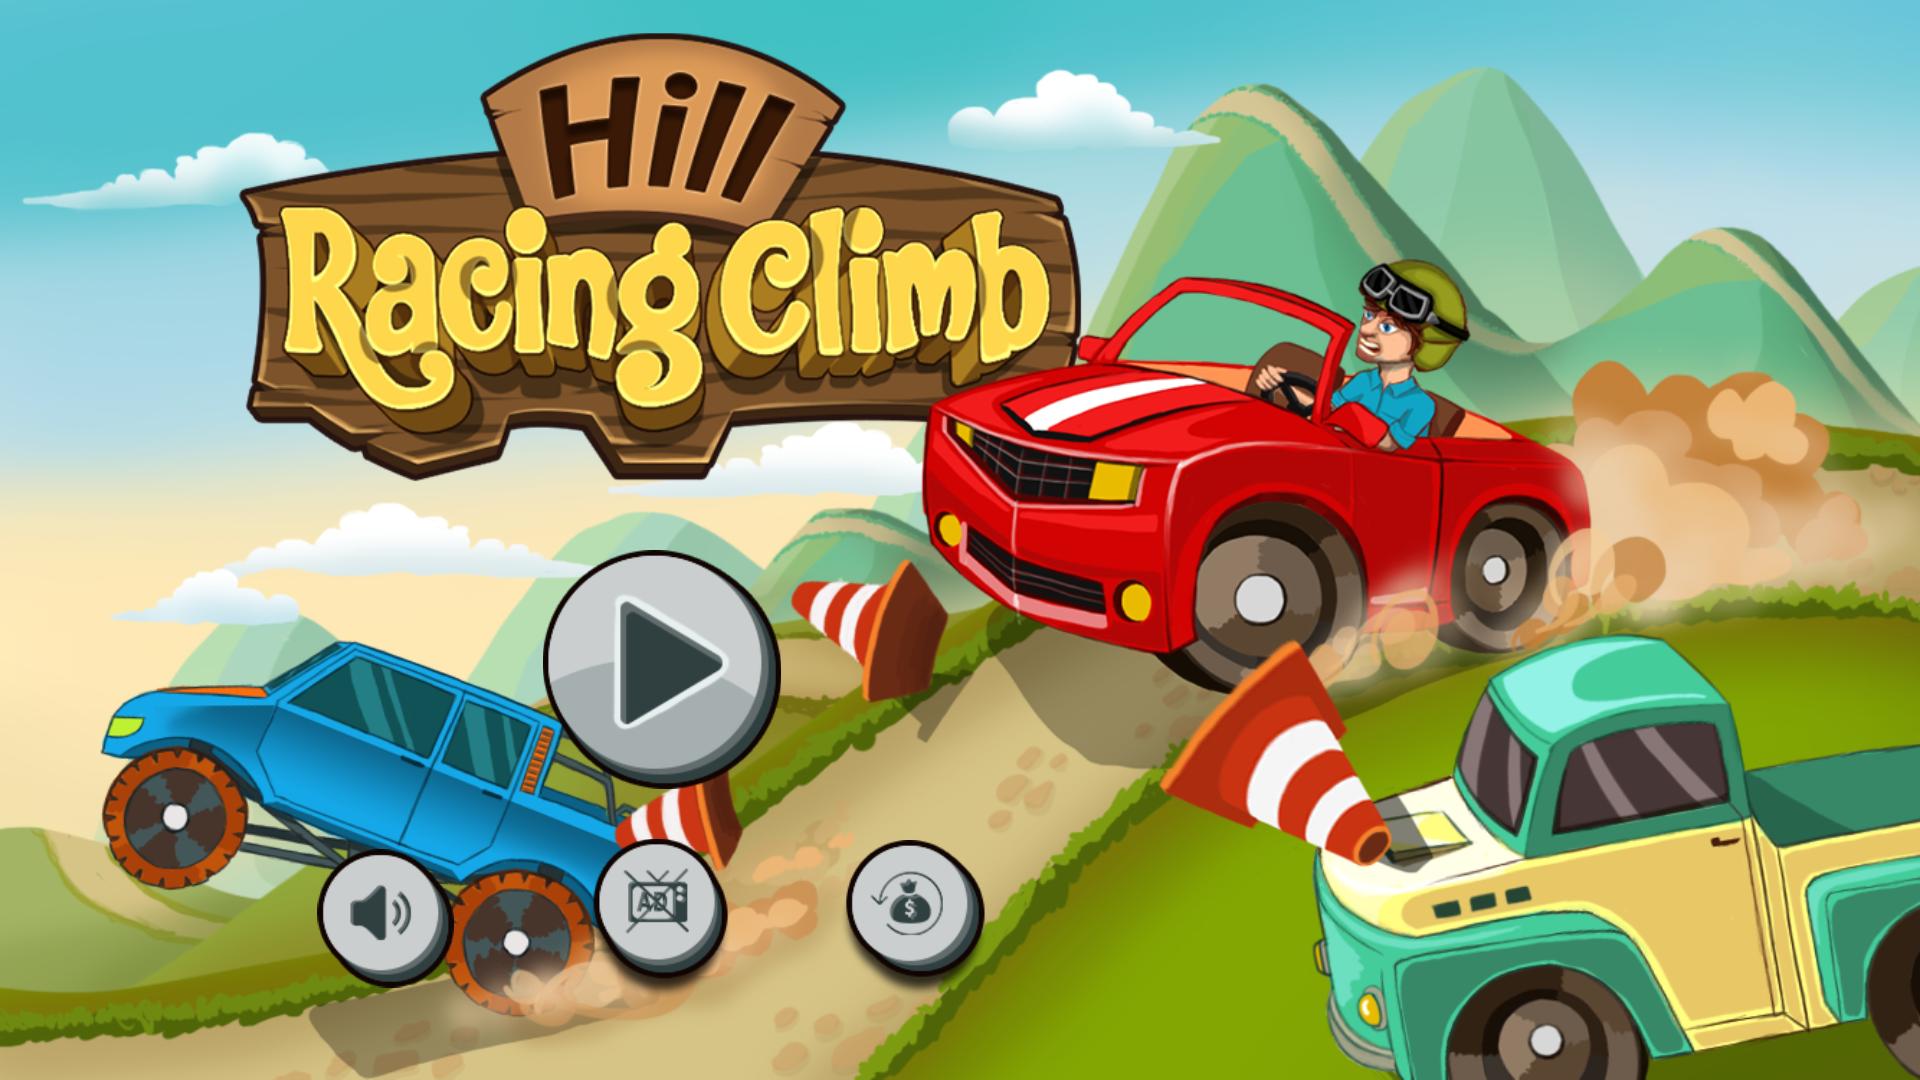 Racing climbing car. Игра Hill Climb Racing 1. Игра на андроид Hill. Гоночные машины из игры Хилл климб рейсинг. Картинка Hill Racing игра.